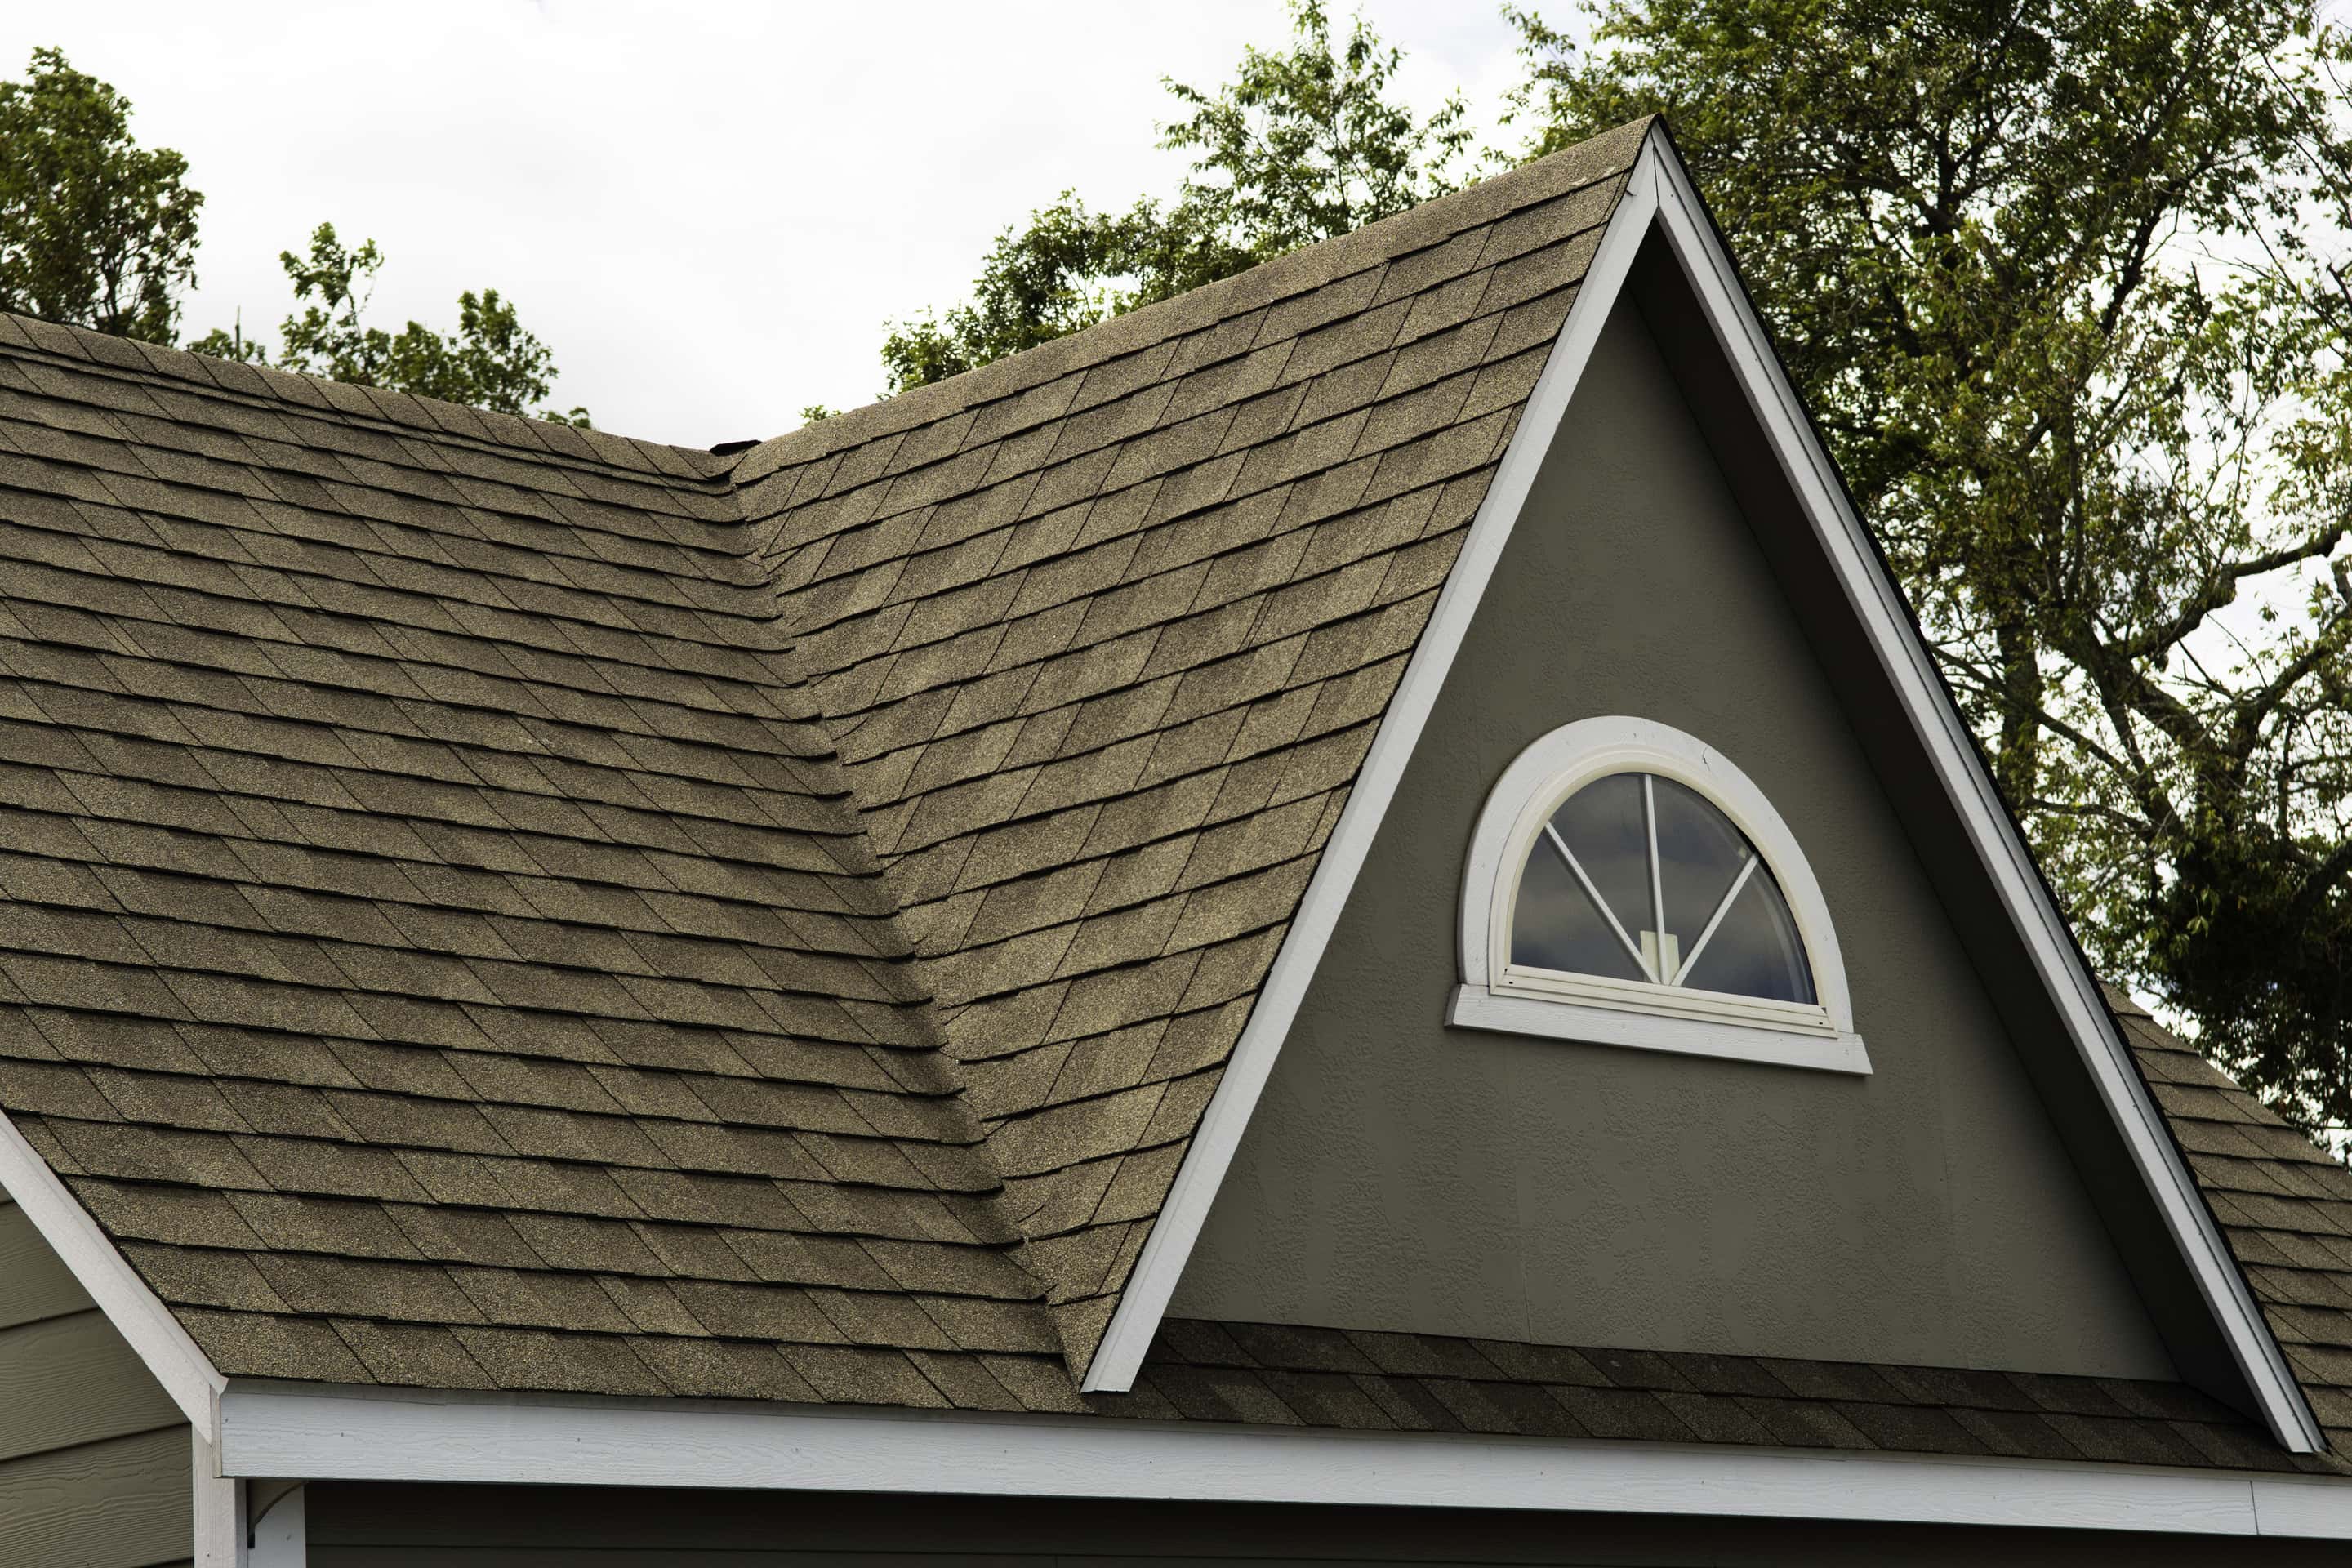 asphalt types of roof shingles on residential roof